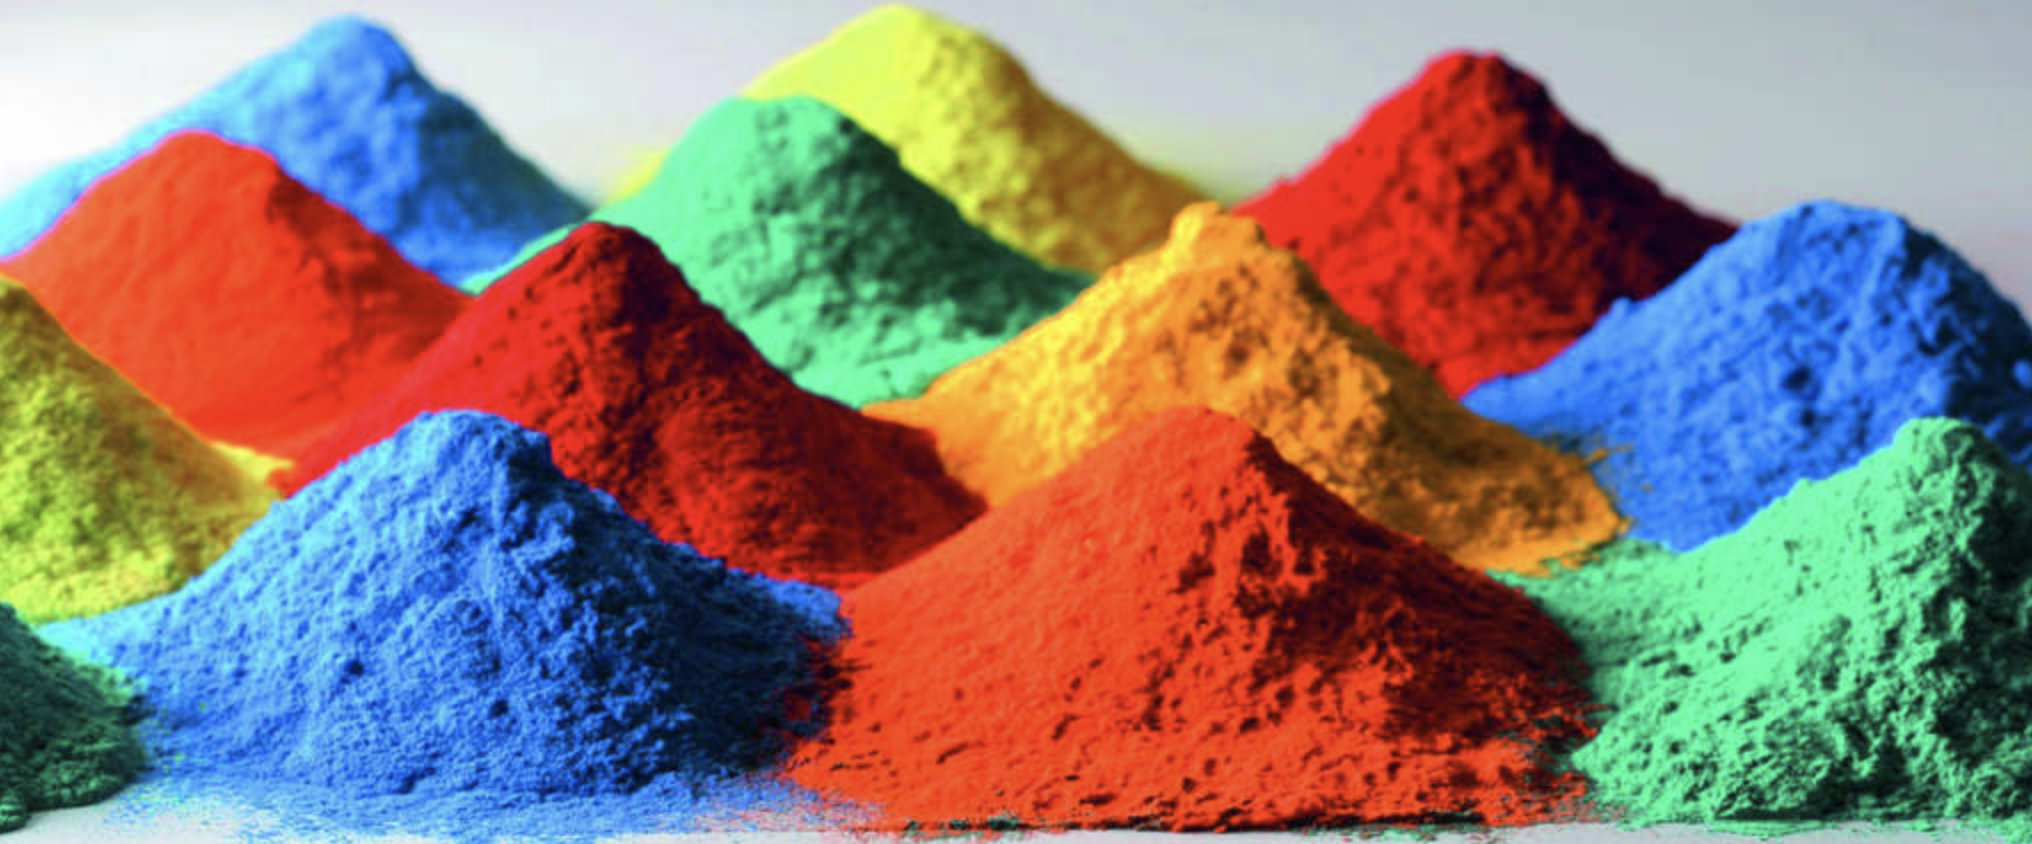 photochromic-pigments-colorwen-com